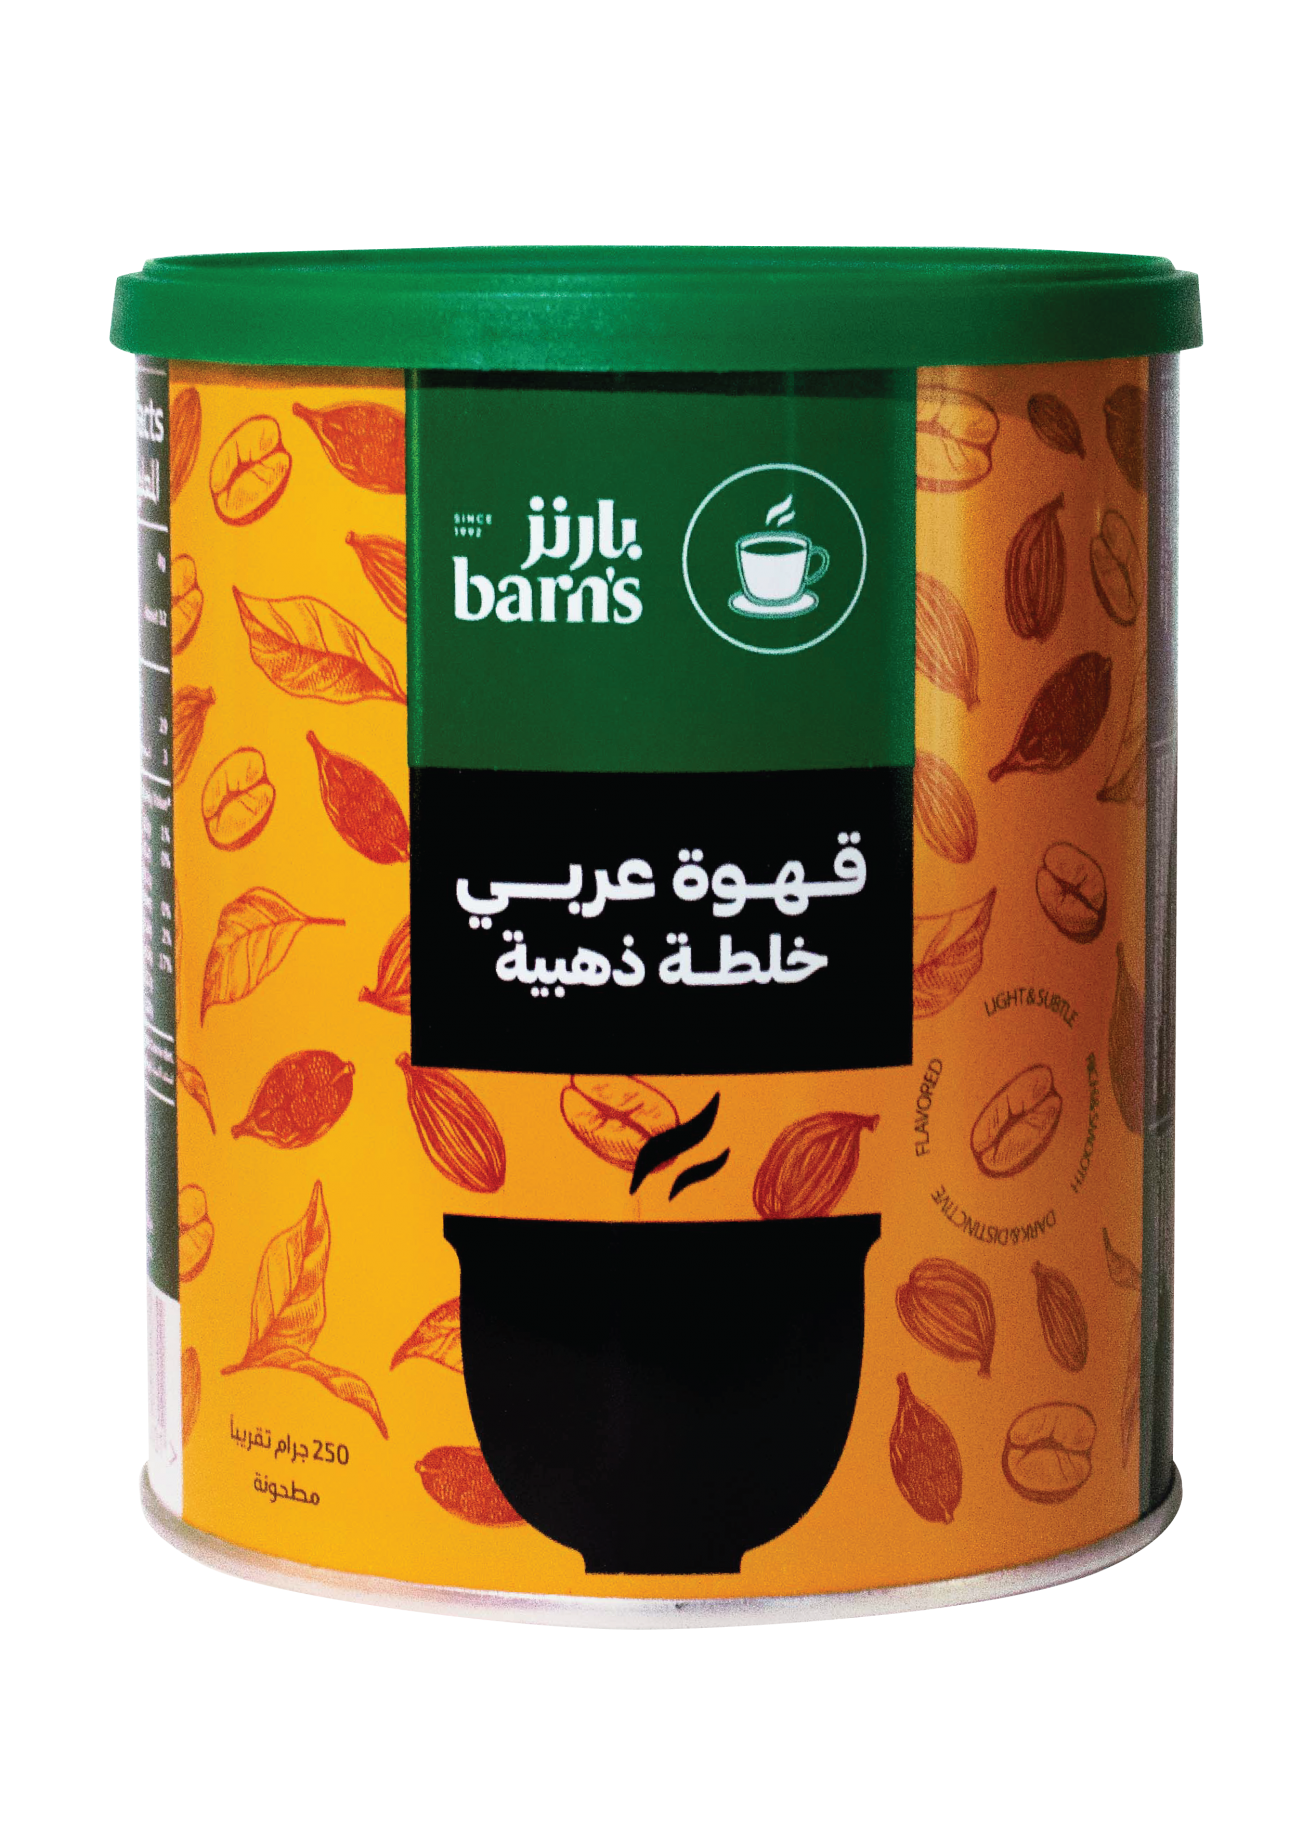 Saudi Coffee with cardamom